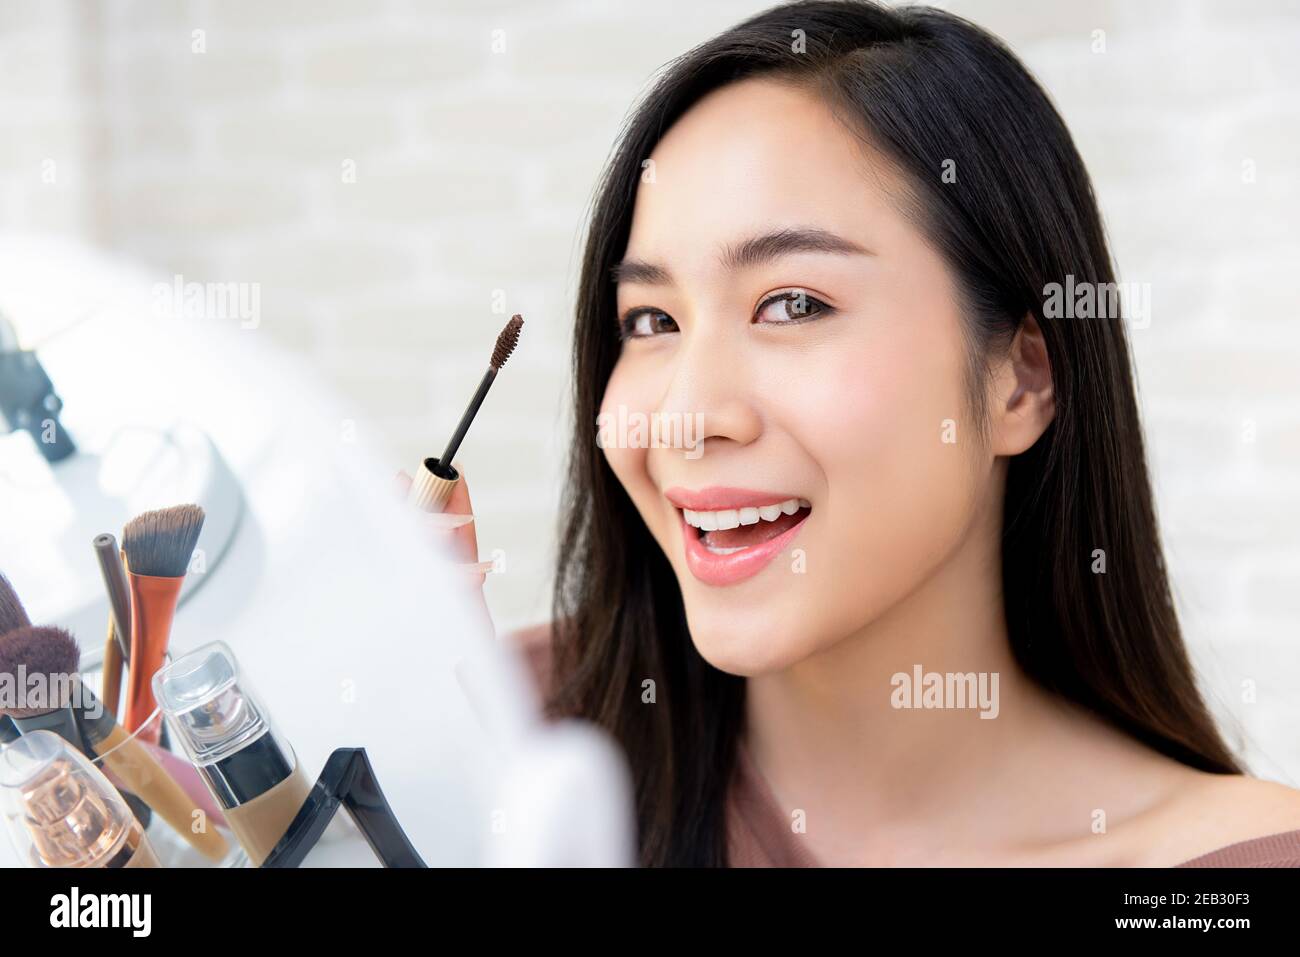 Junge schöne lächelnde asiatische Frau mit Mascara Make-up für Wimpern Stockfoto